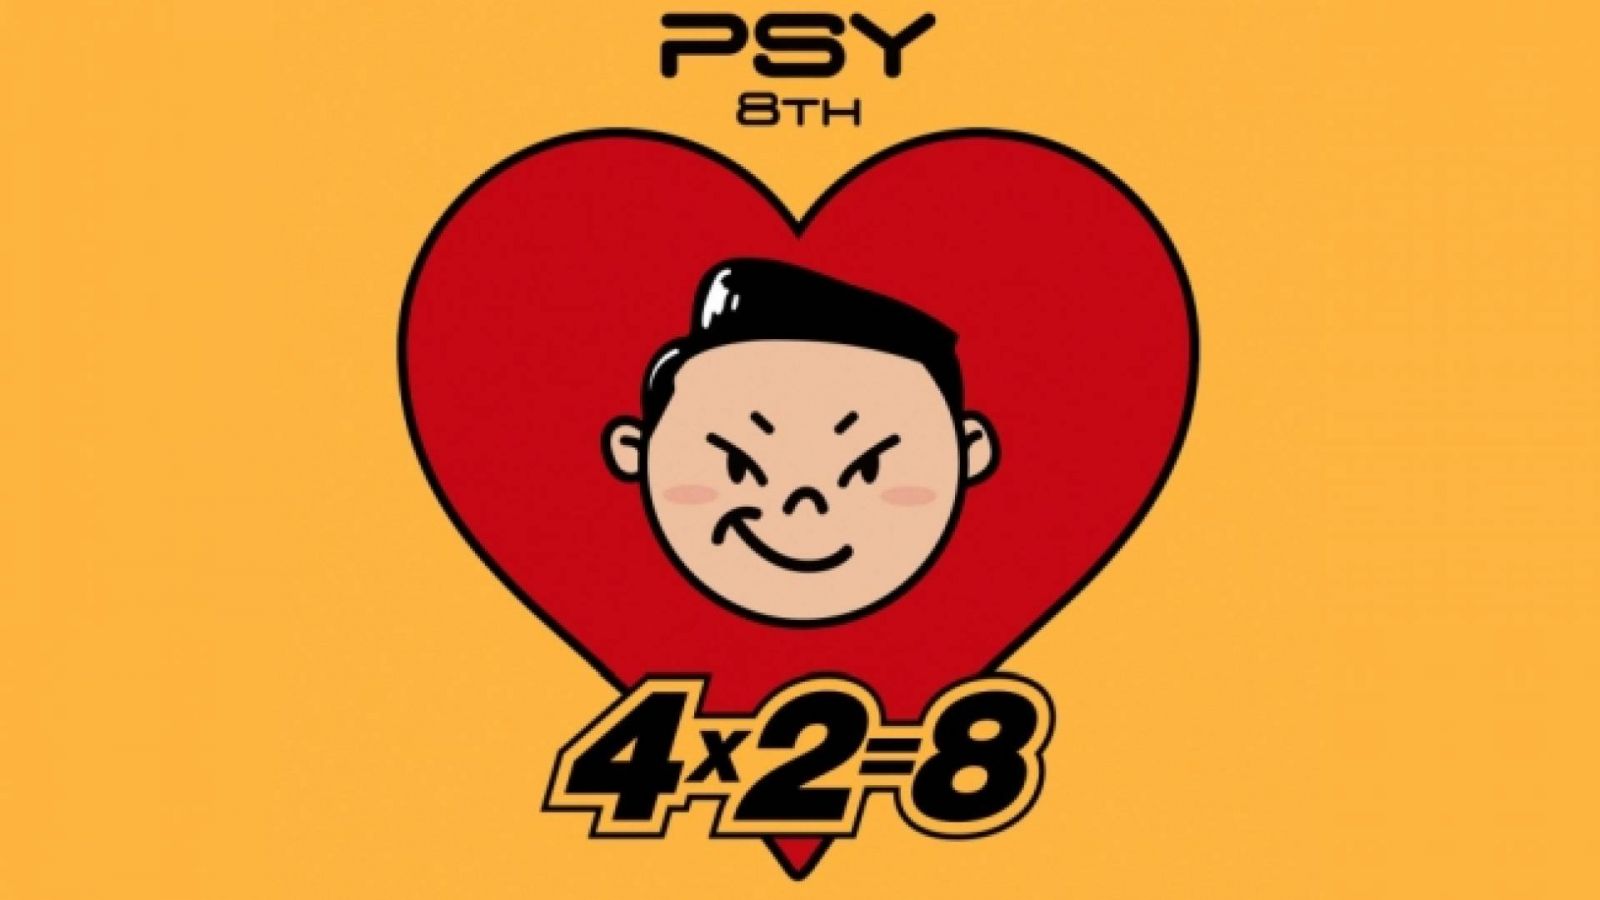 PSY julkaisee uuden albuminsa huomenna © YG Entertainment Inc